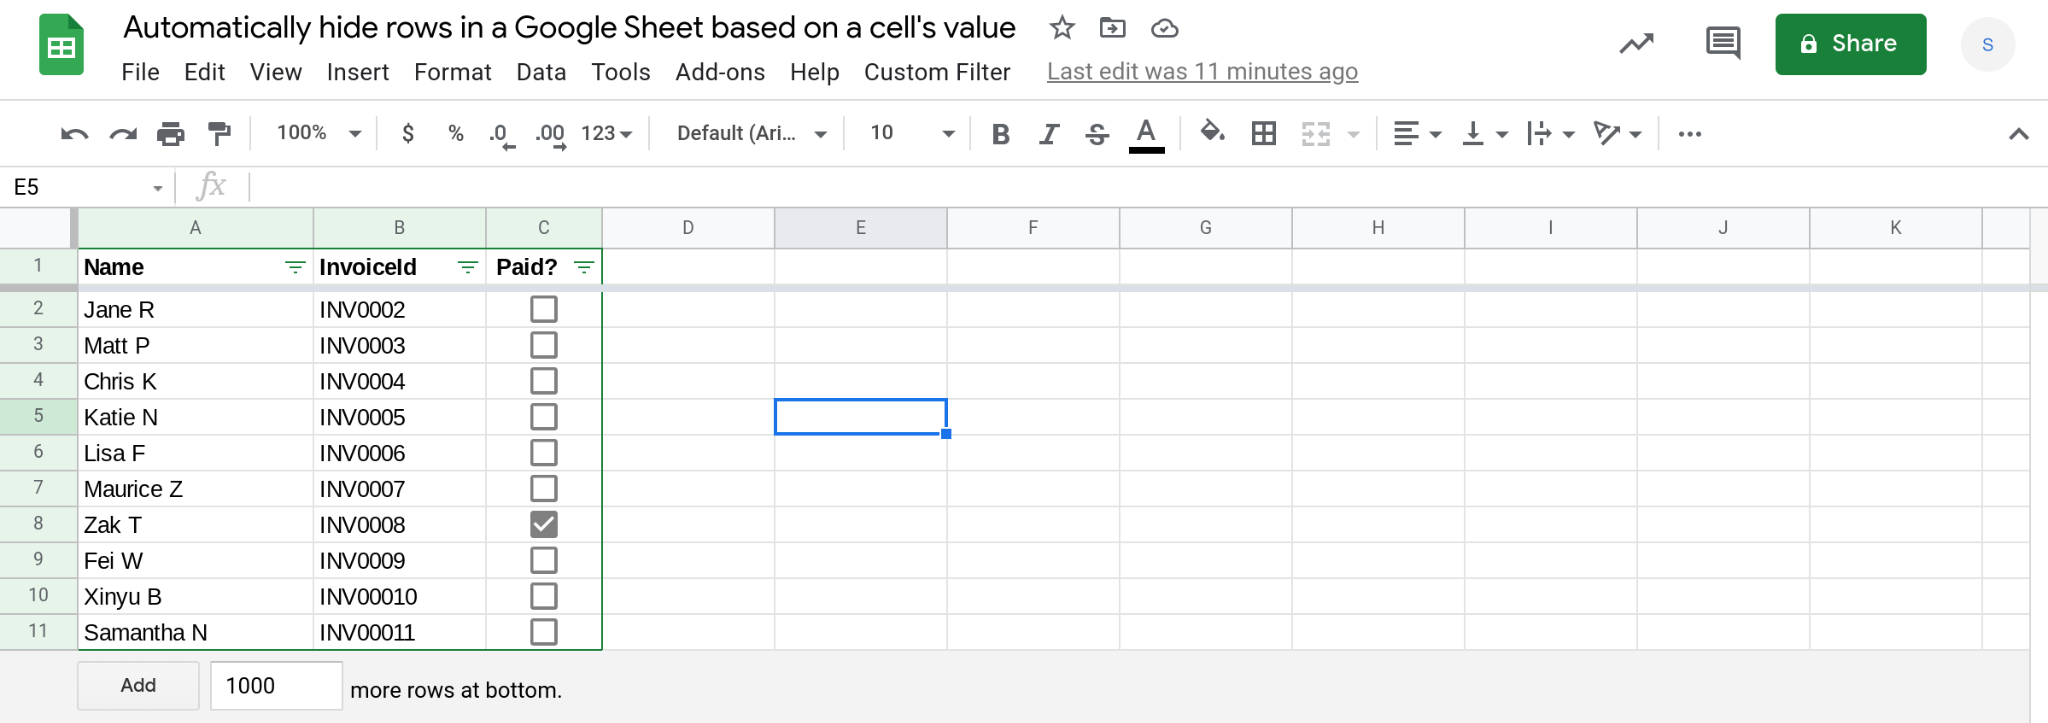 A screenshot of a Google Sheets spreadsheet.